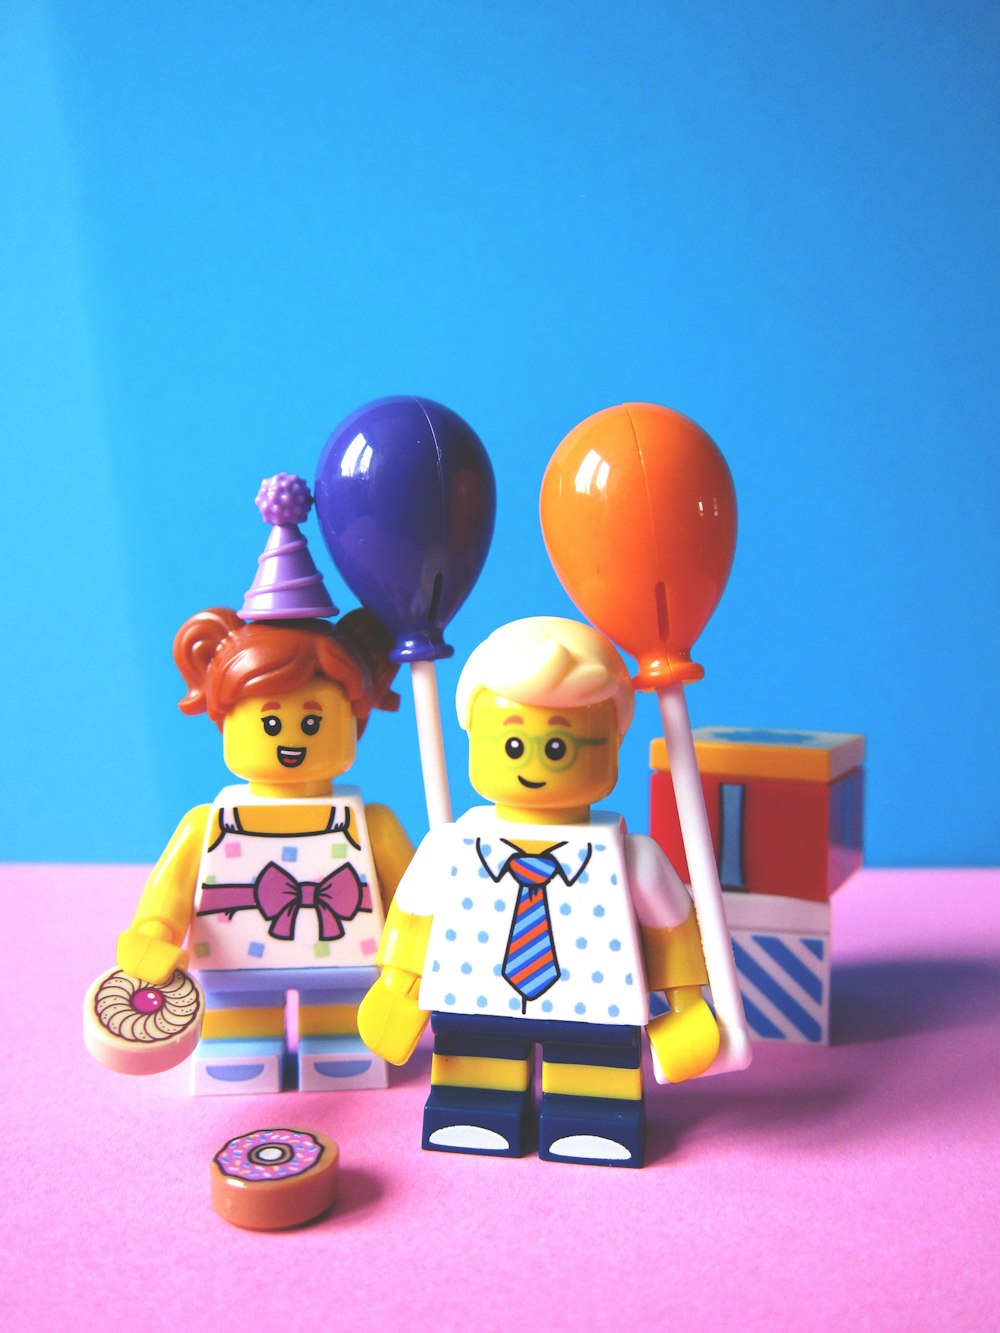 Mädchen und Junge mit Ballon-Lego-Minifuguren